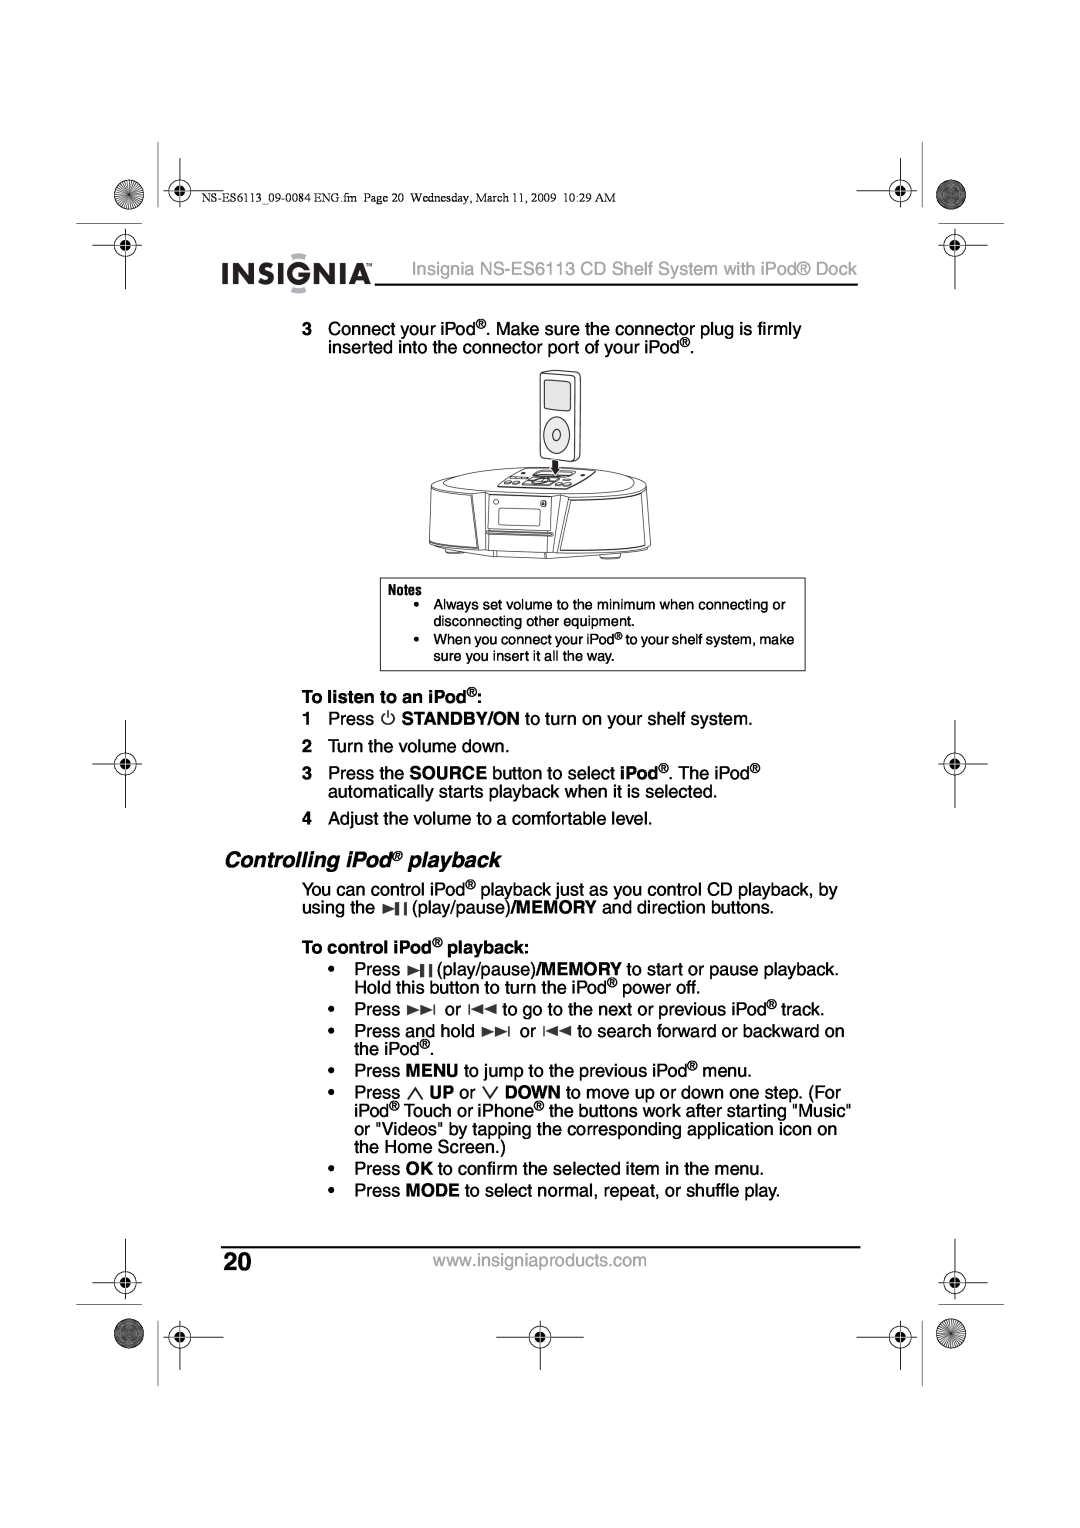 Insignia NS-ES6113 manual Controlling iPod playback, To listen to an iPod, To control iPod playback 